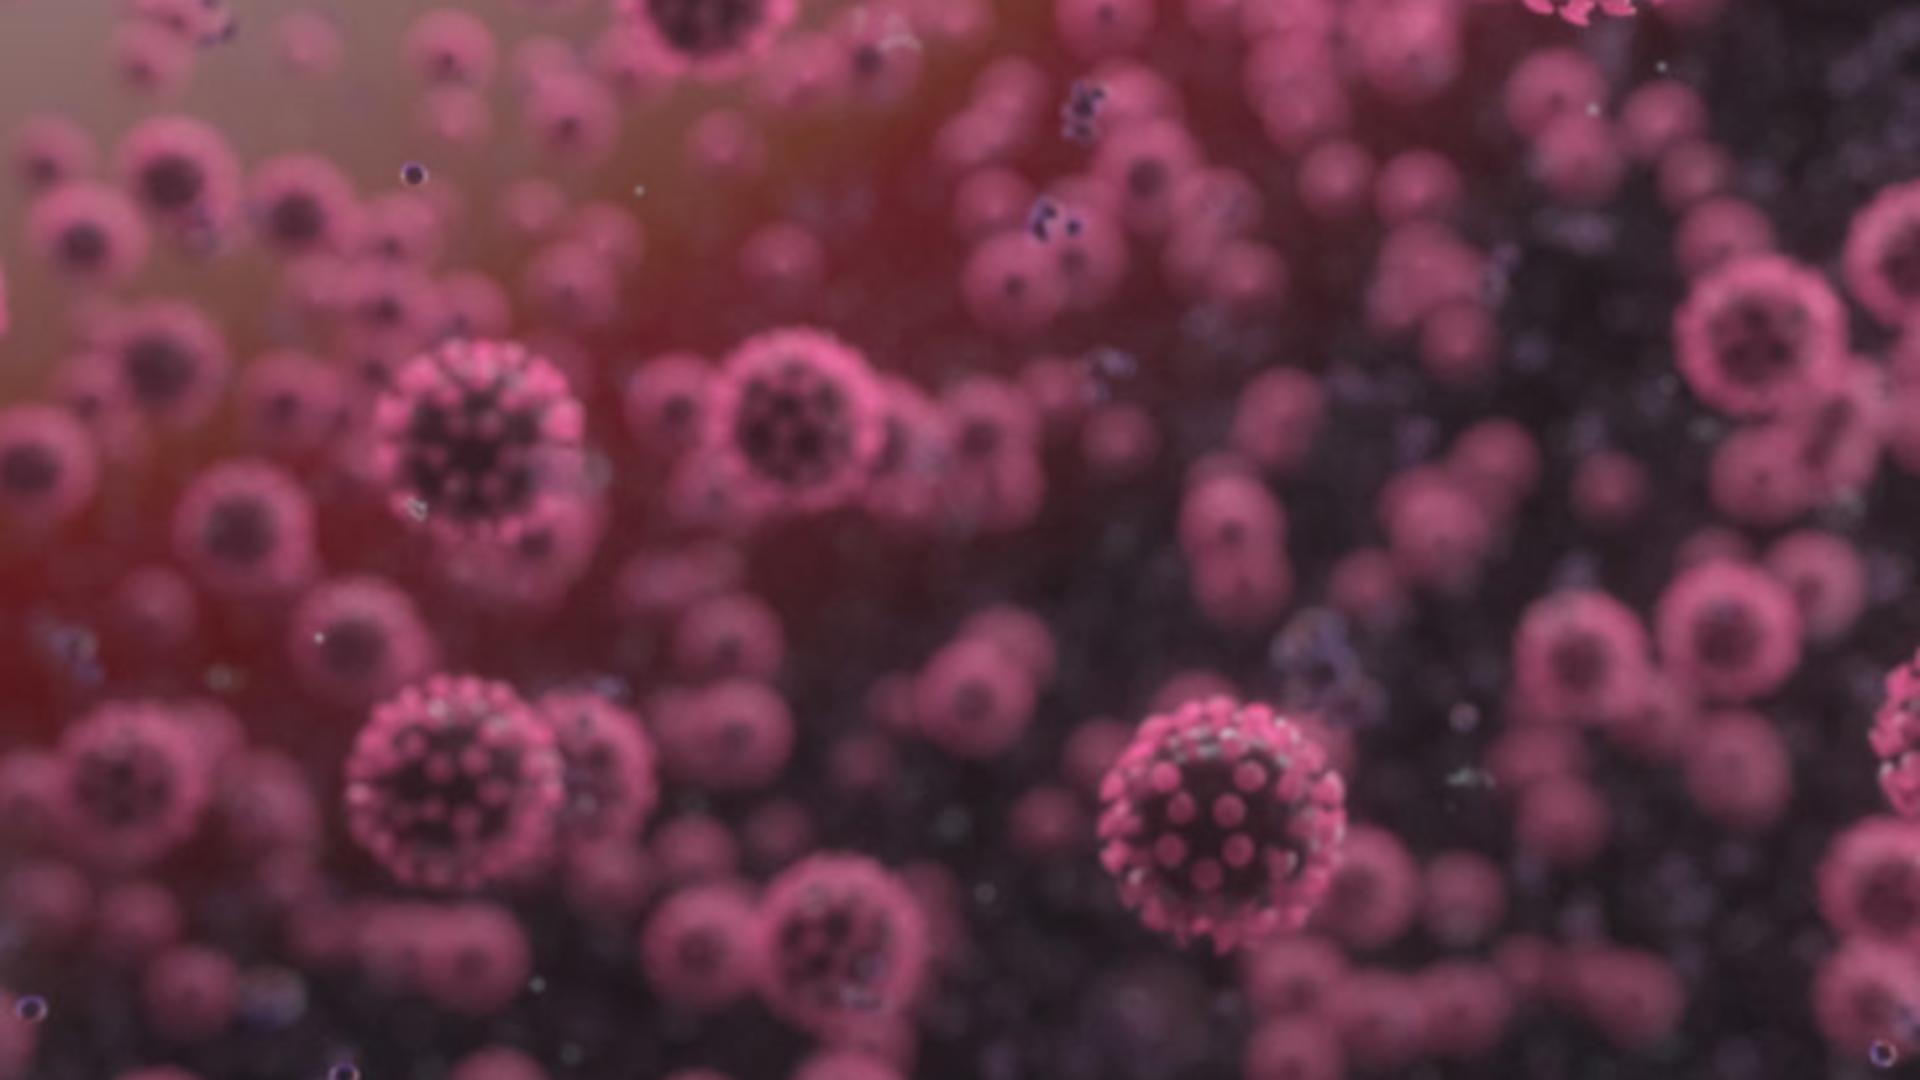 Coronavirusul, transmis prin celulele sistemul imunitar. CUM poate fi STOPATĂ infectarea - Descoperirea care poate schimba pandemia